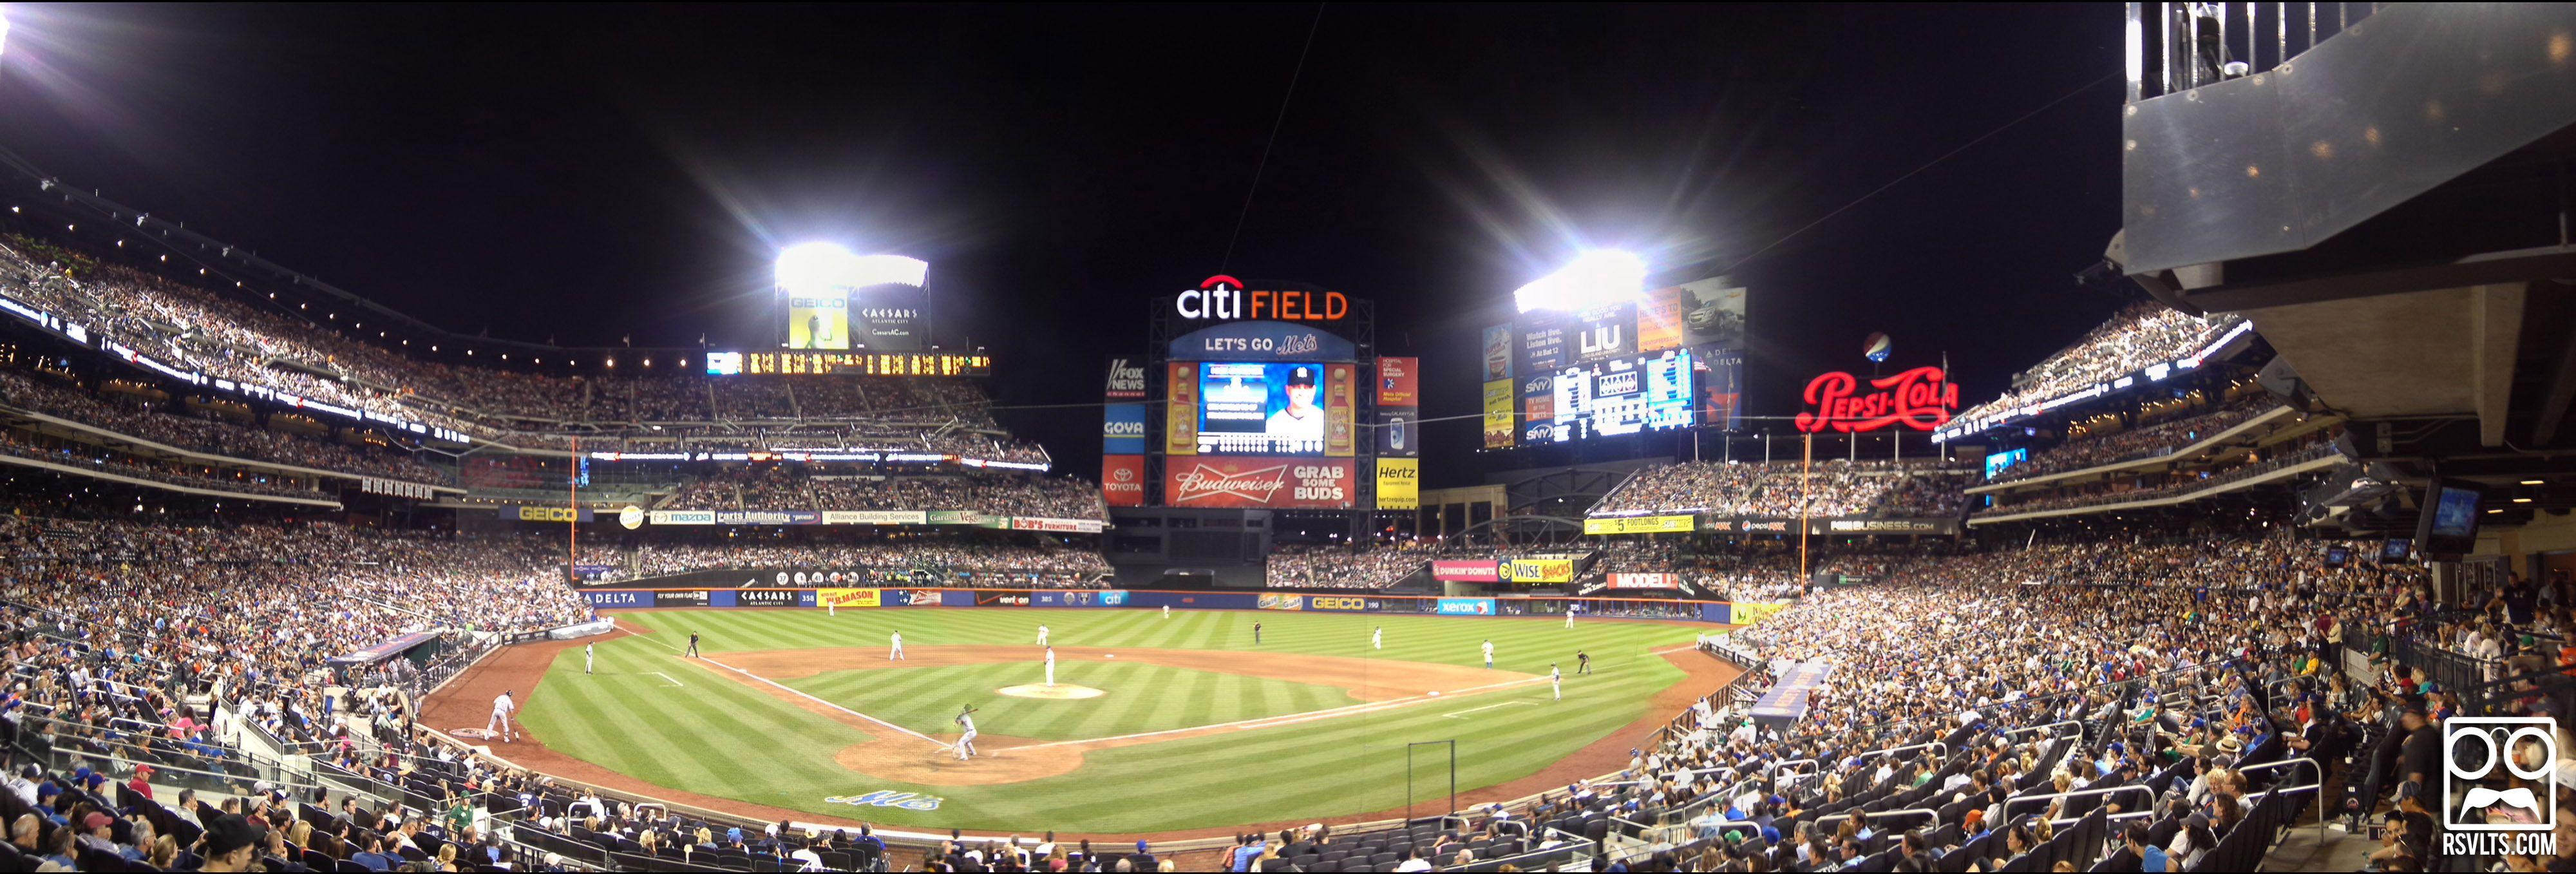 New York Mets' Citi Field In Panorama (5 Photo)